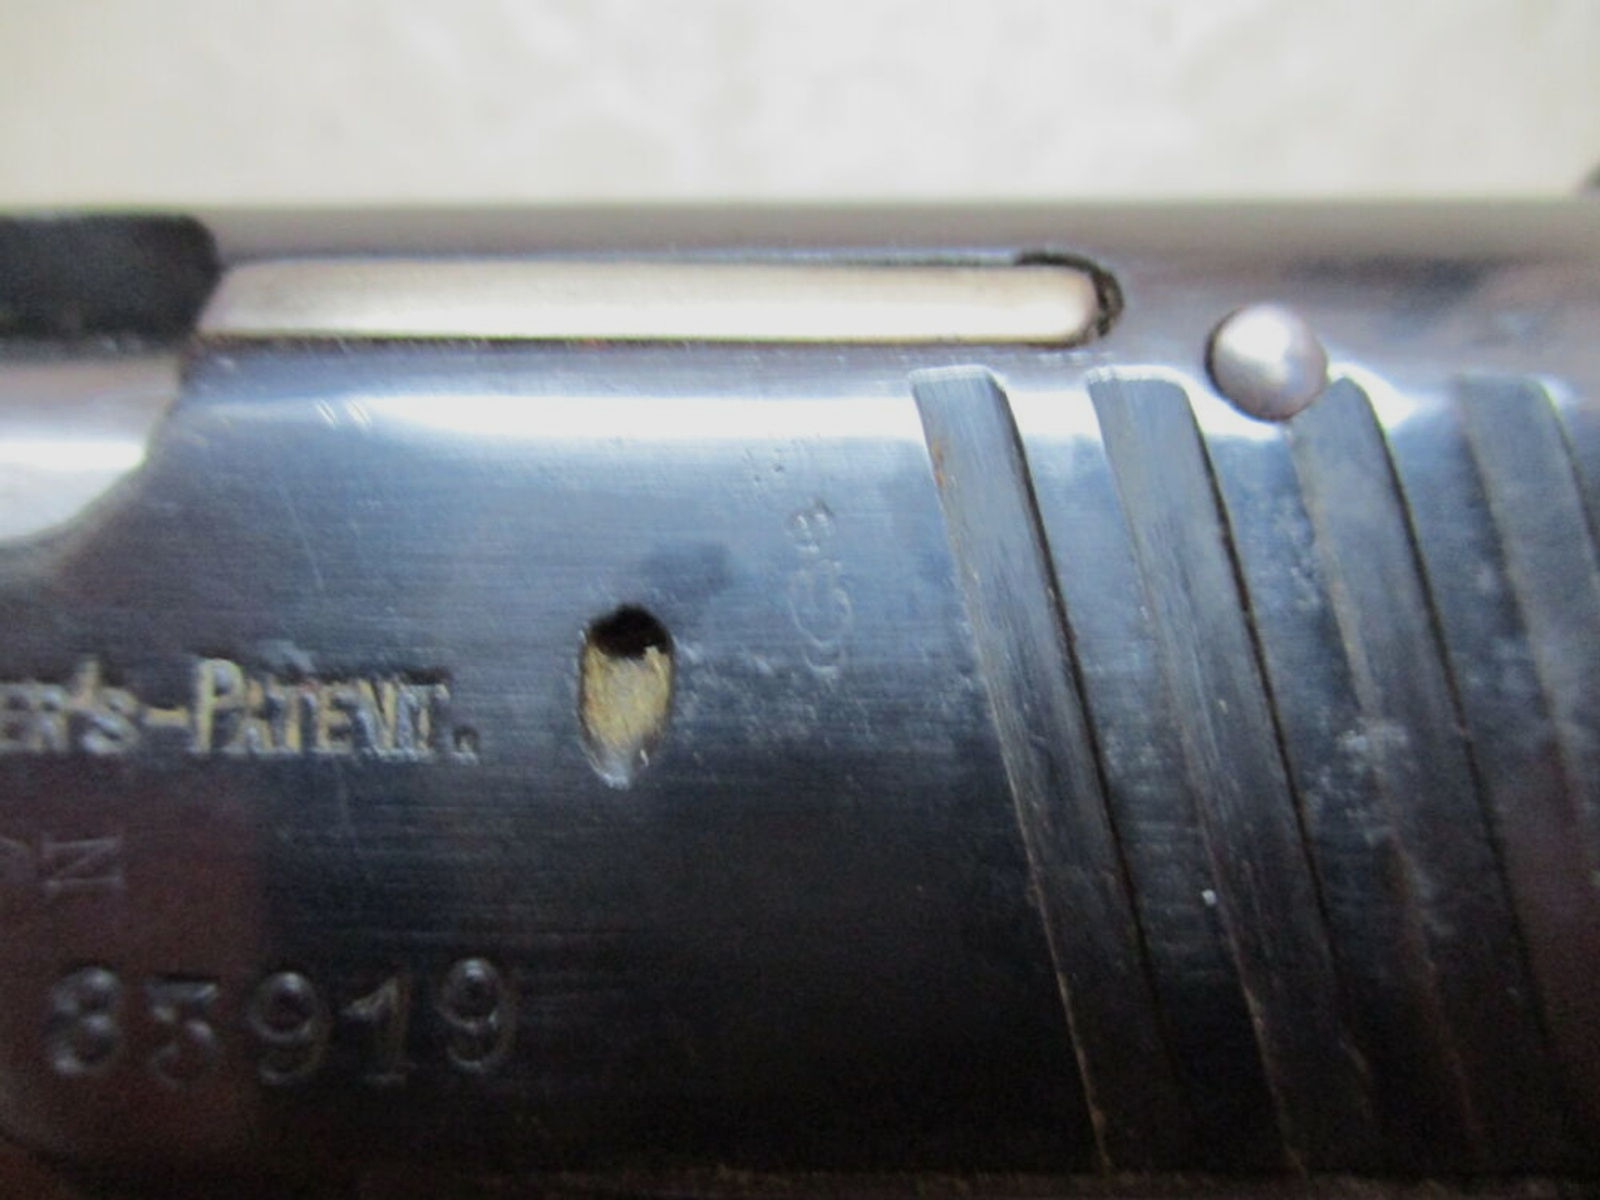 Pistole Walther Mod. 4 IV Militärabnahme Lizenzfertigung J. Meffert	 4